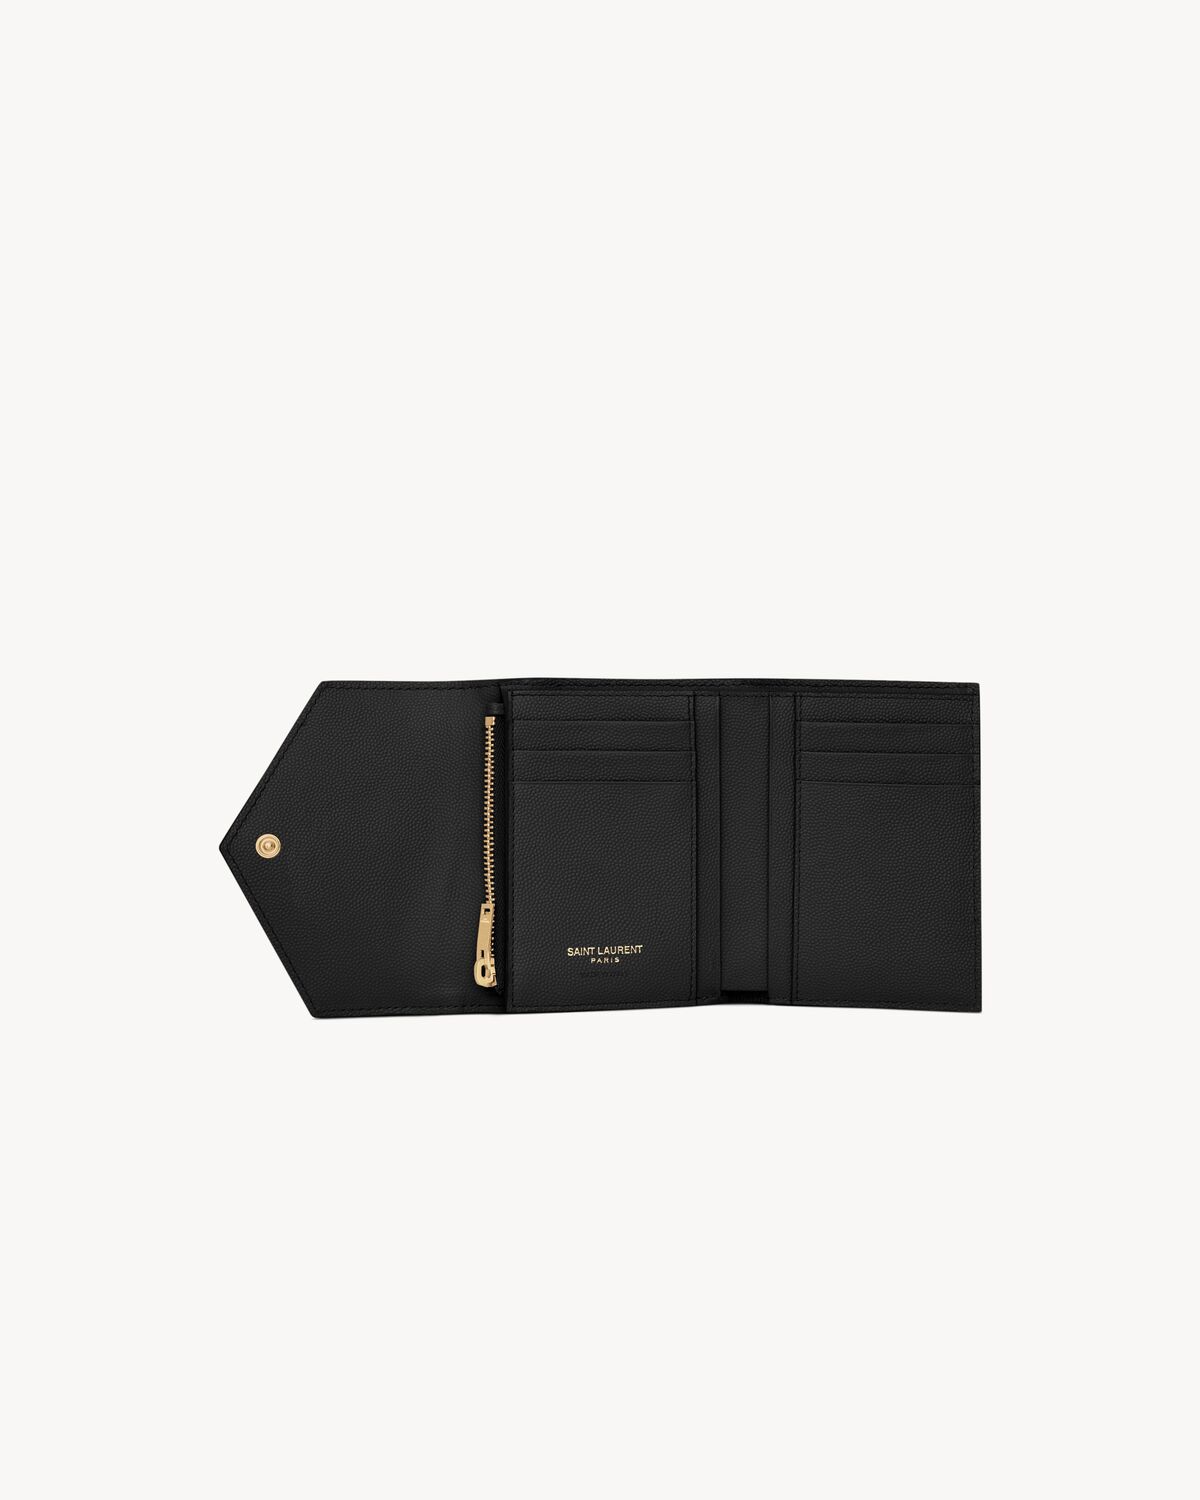 CASSANDRE MATELASSÉ compact tri fold wallet in grain de poudre leather